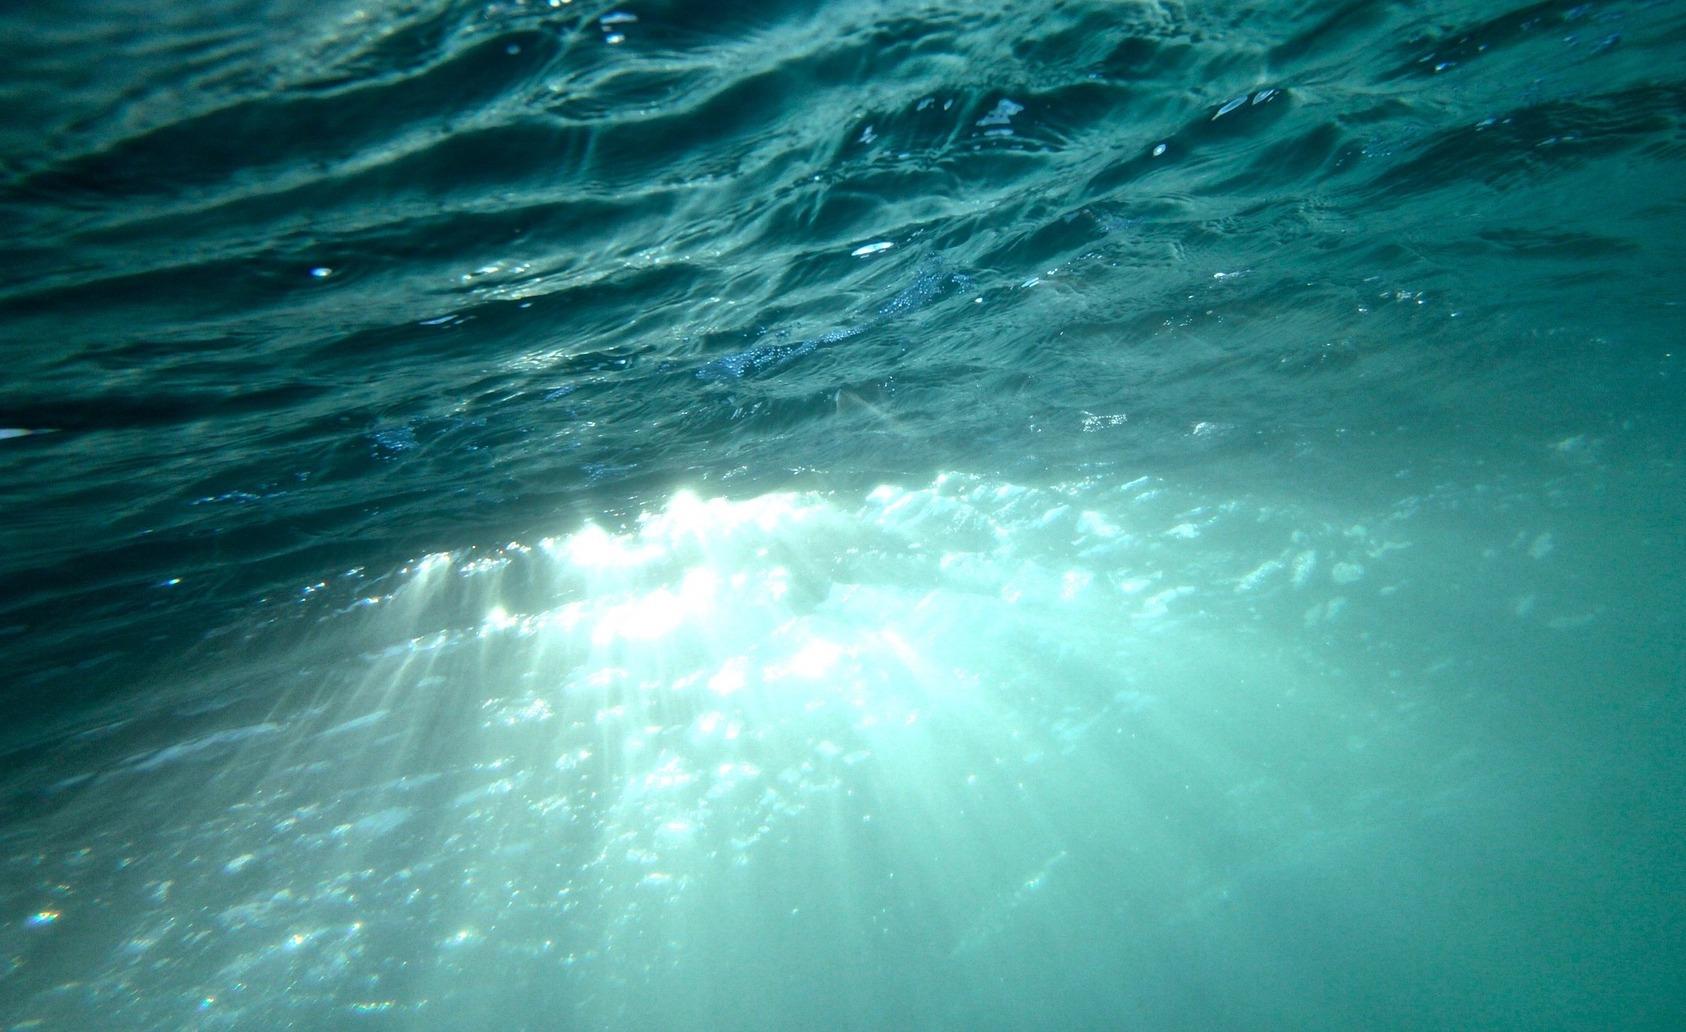 Miljøvenlig sejlads: sejl klimavenligt og minimer dit aftryk på havmiljøet